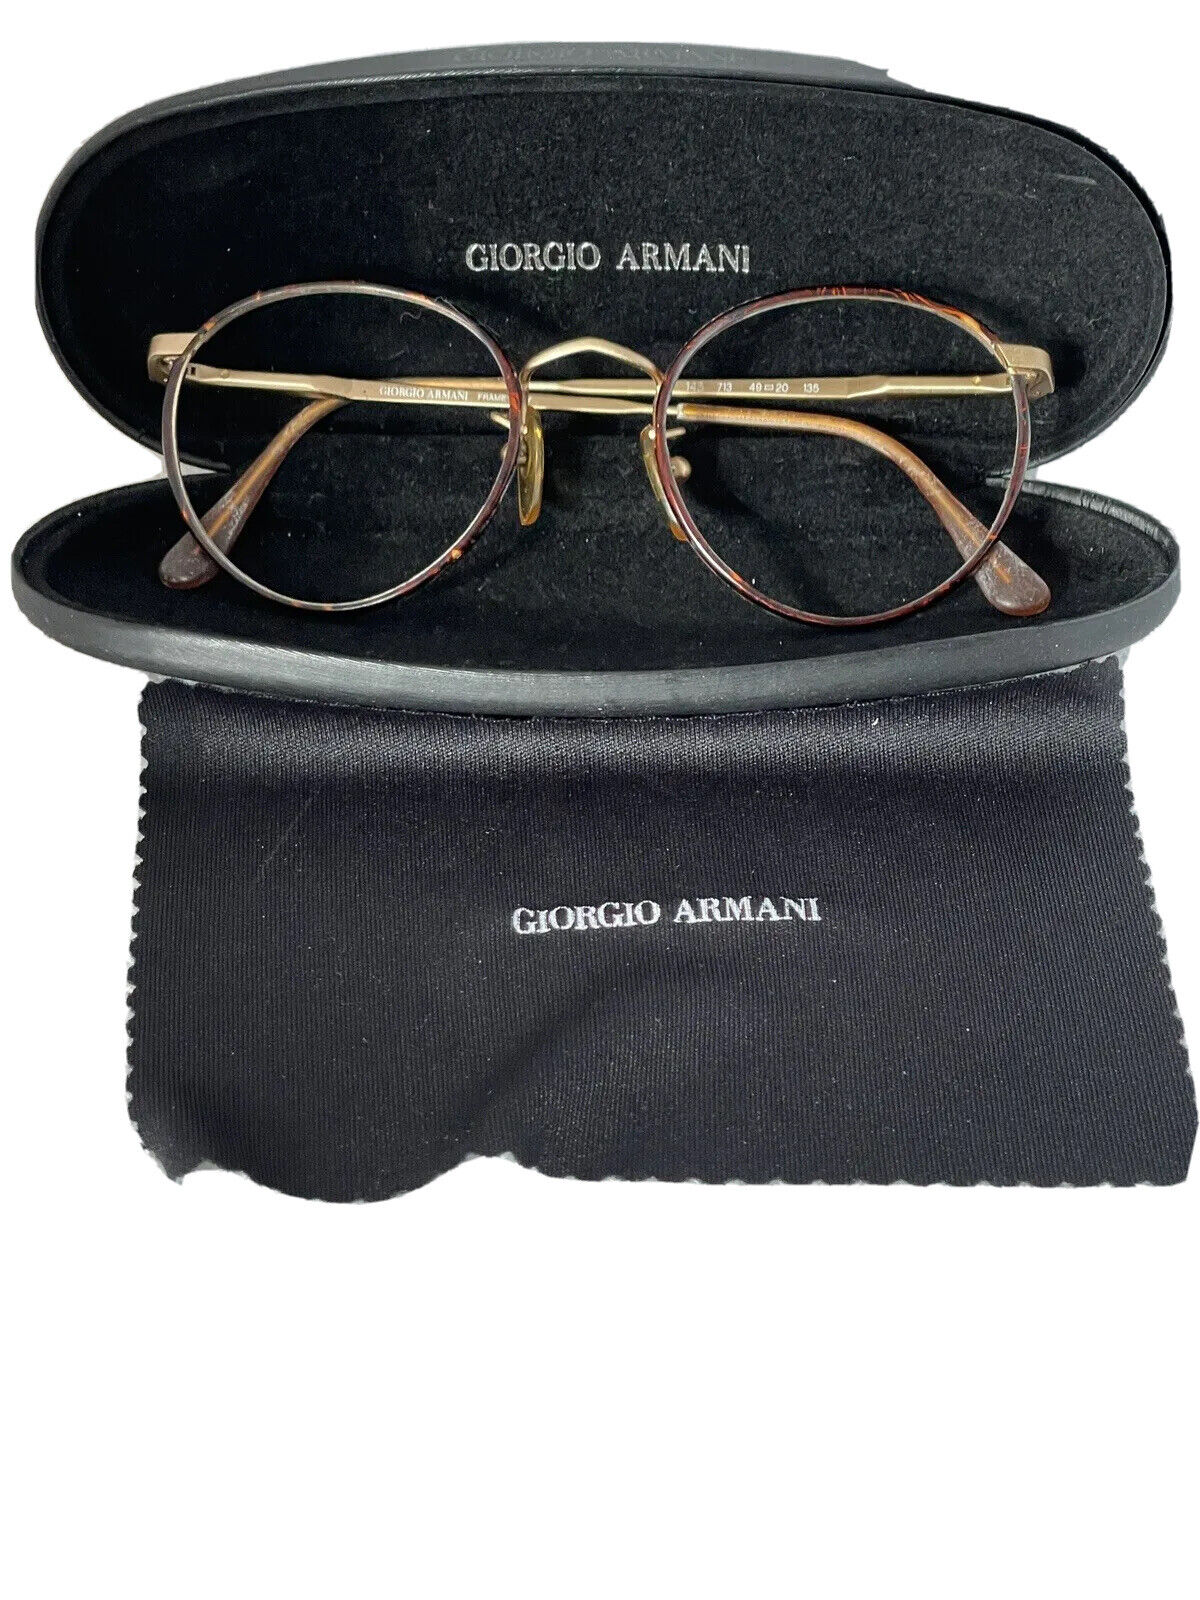 Vintage Giorgio Armani Round 49-20-135 112 713 Tortoise ItaLy Frame Eyeglasses